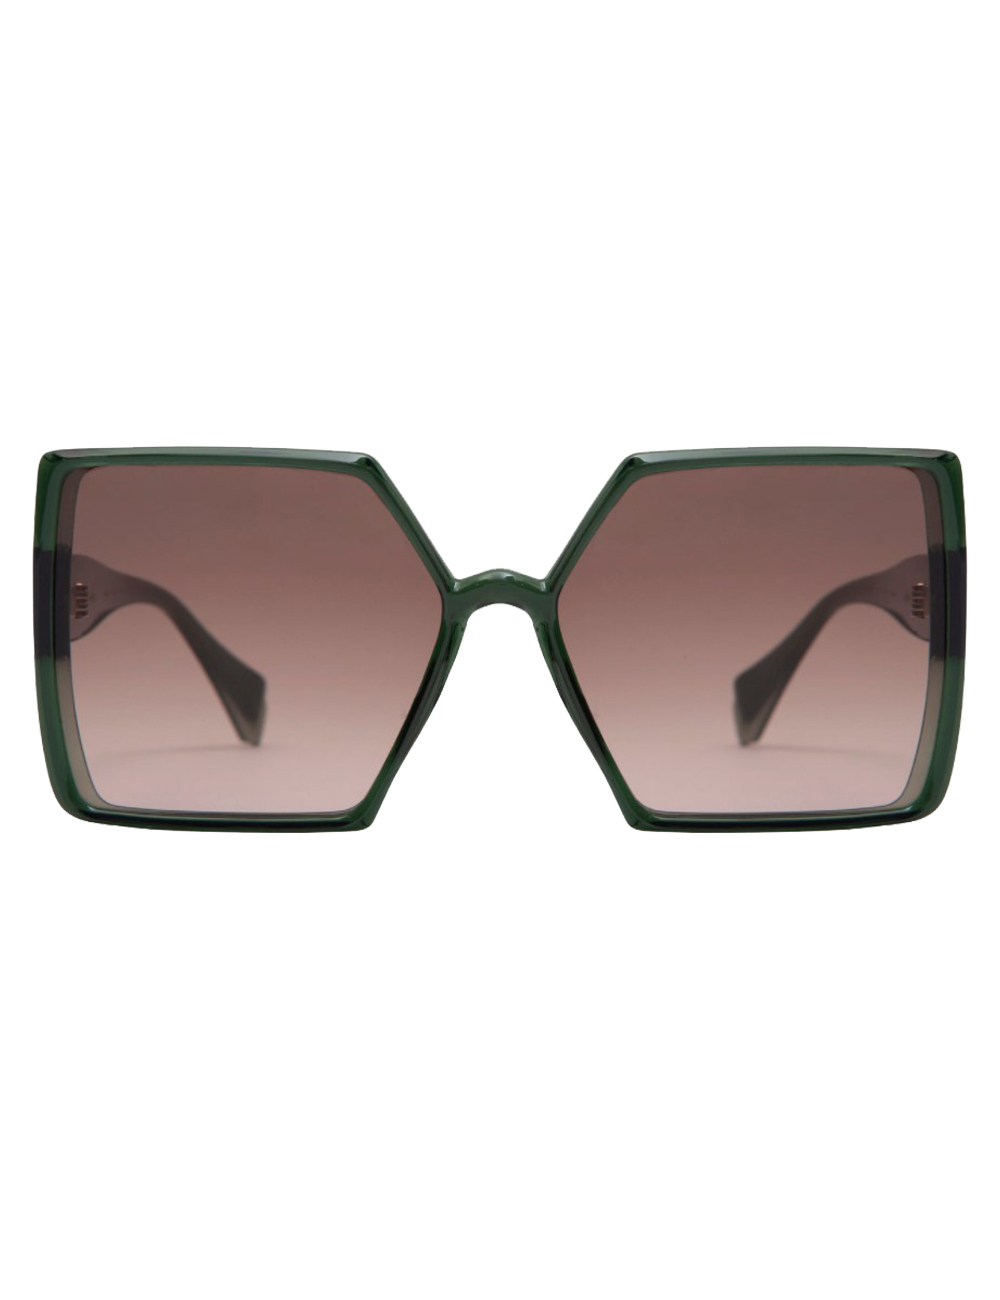 фото Солнцезащитные очки женские gigibarcelona ava